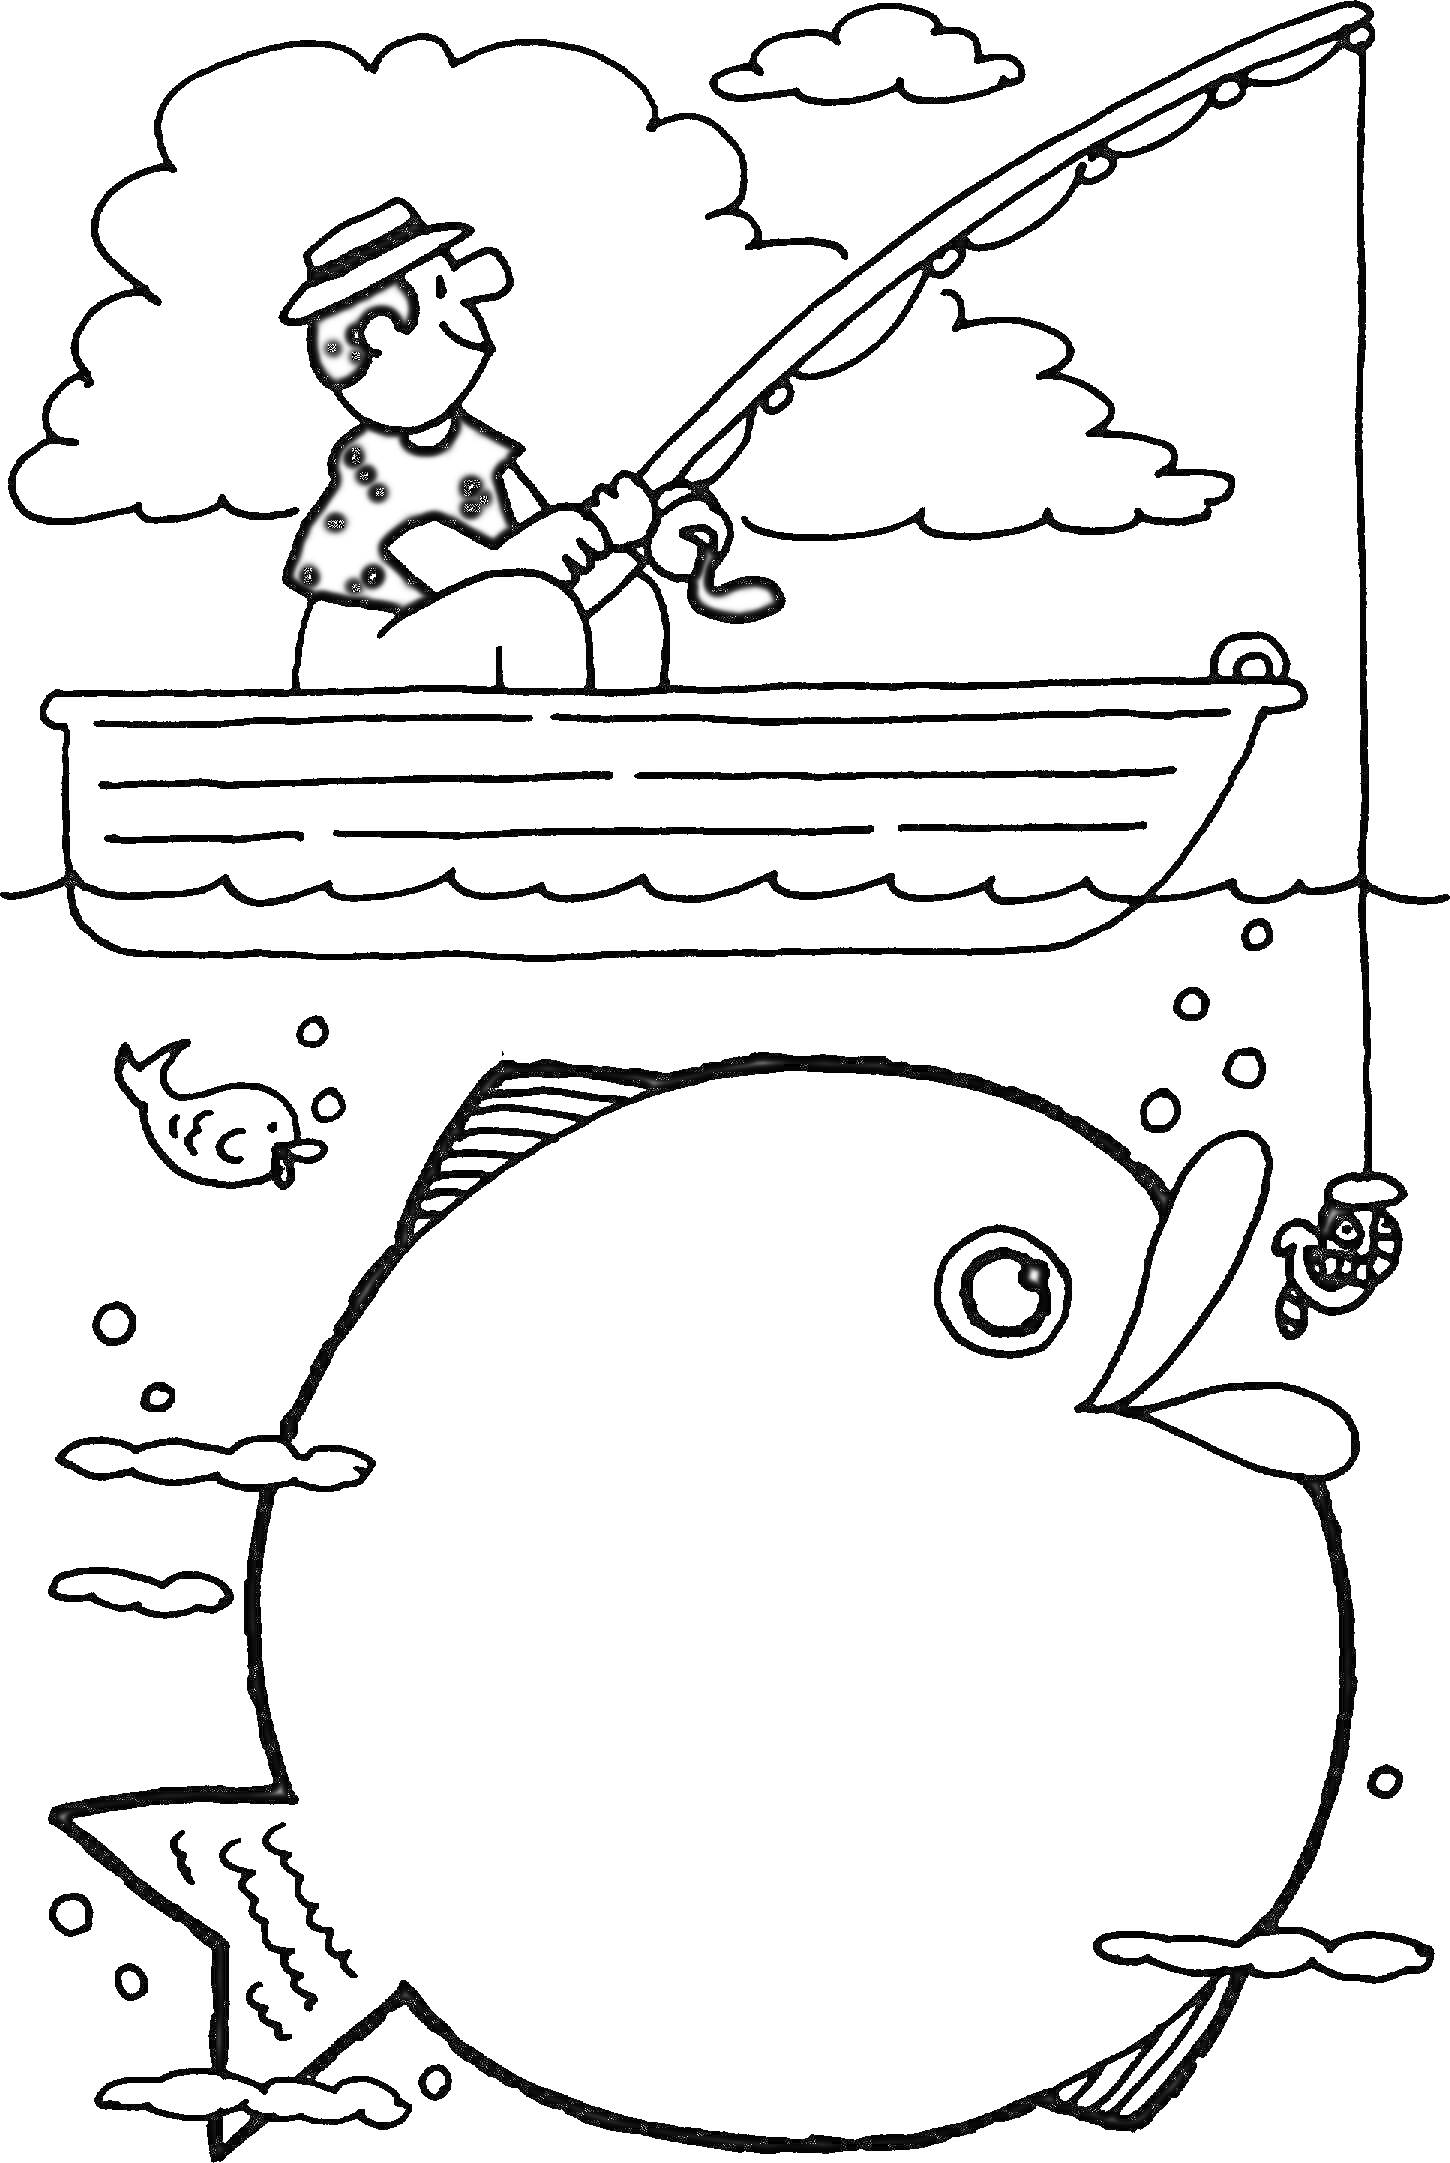 Раскраска Рыбак в лодке с удочкой, большая рыба, маленькая рыба, облака